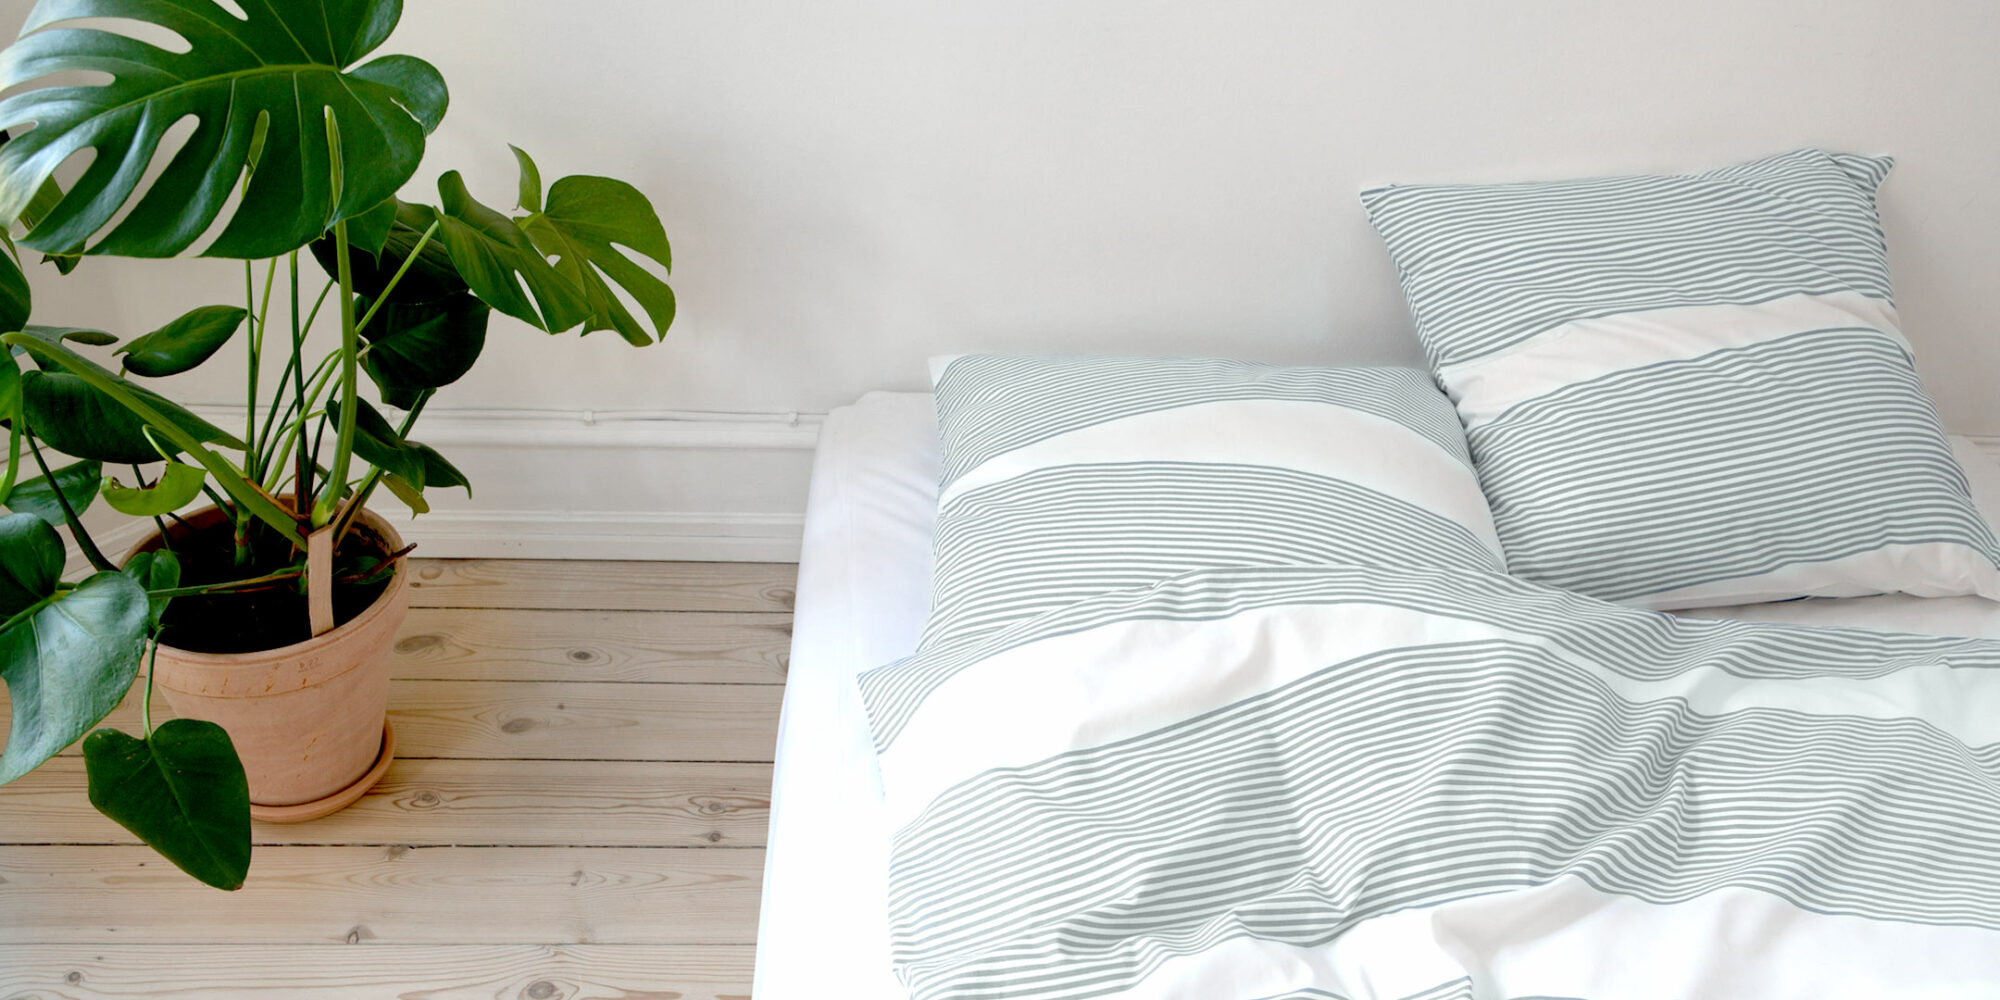 Bed linen, River aqua green, design by Anne Rosenberg, RosenbergCph